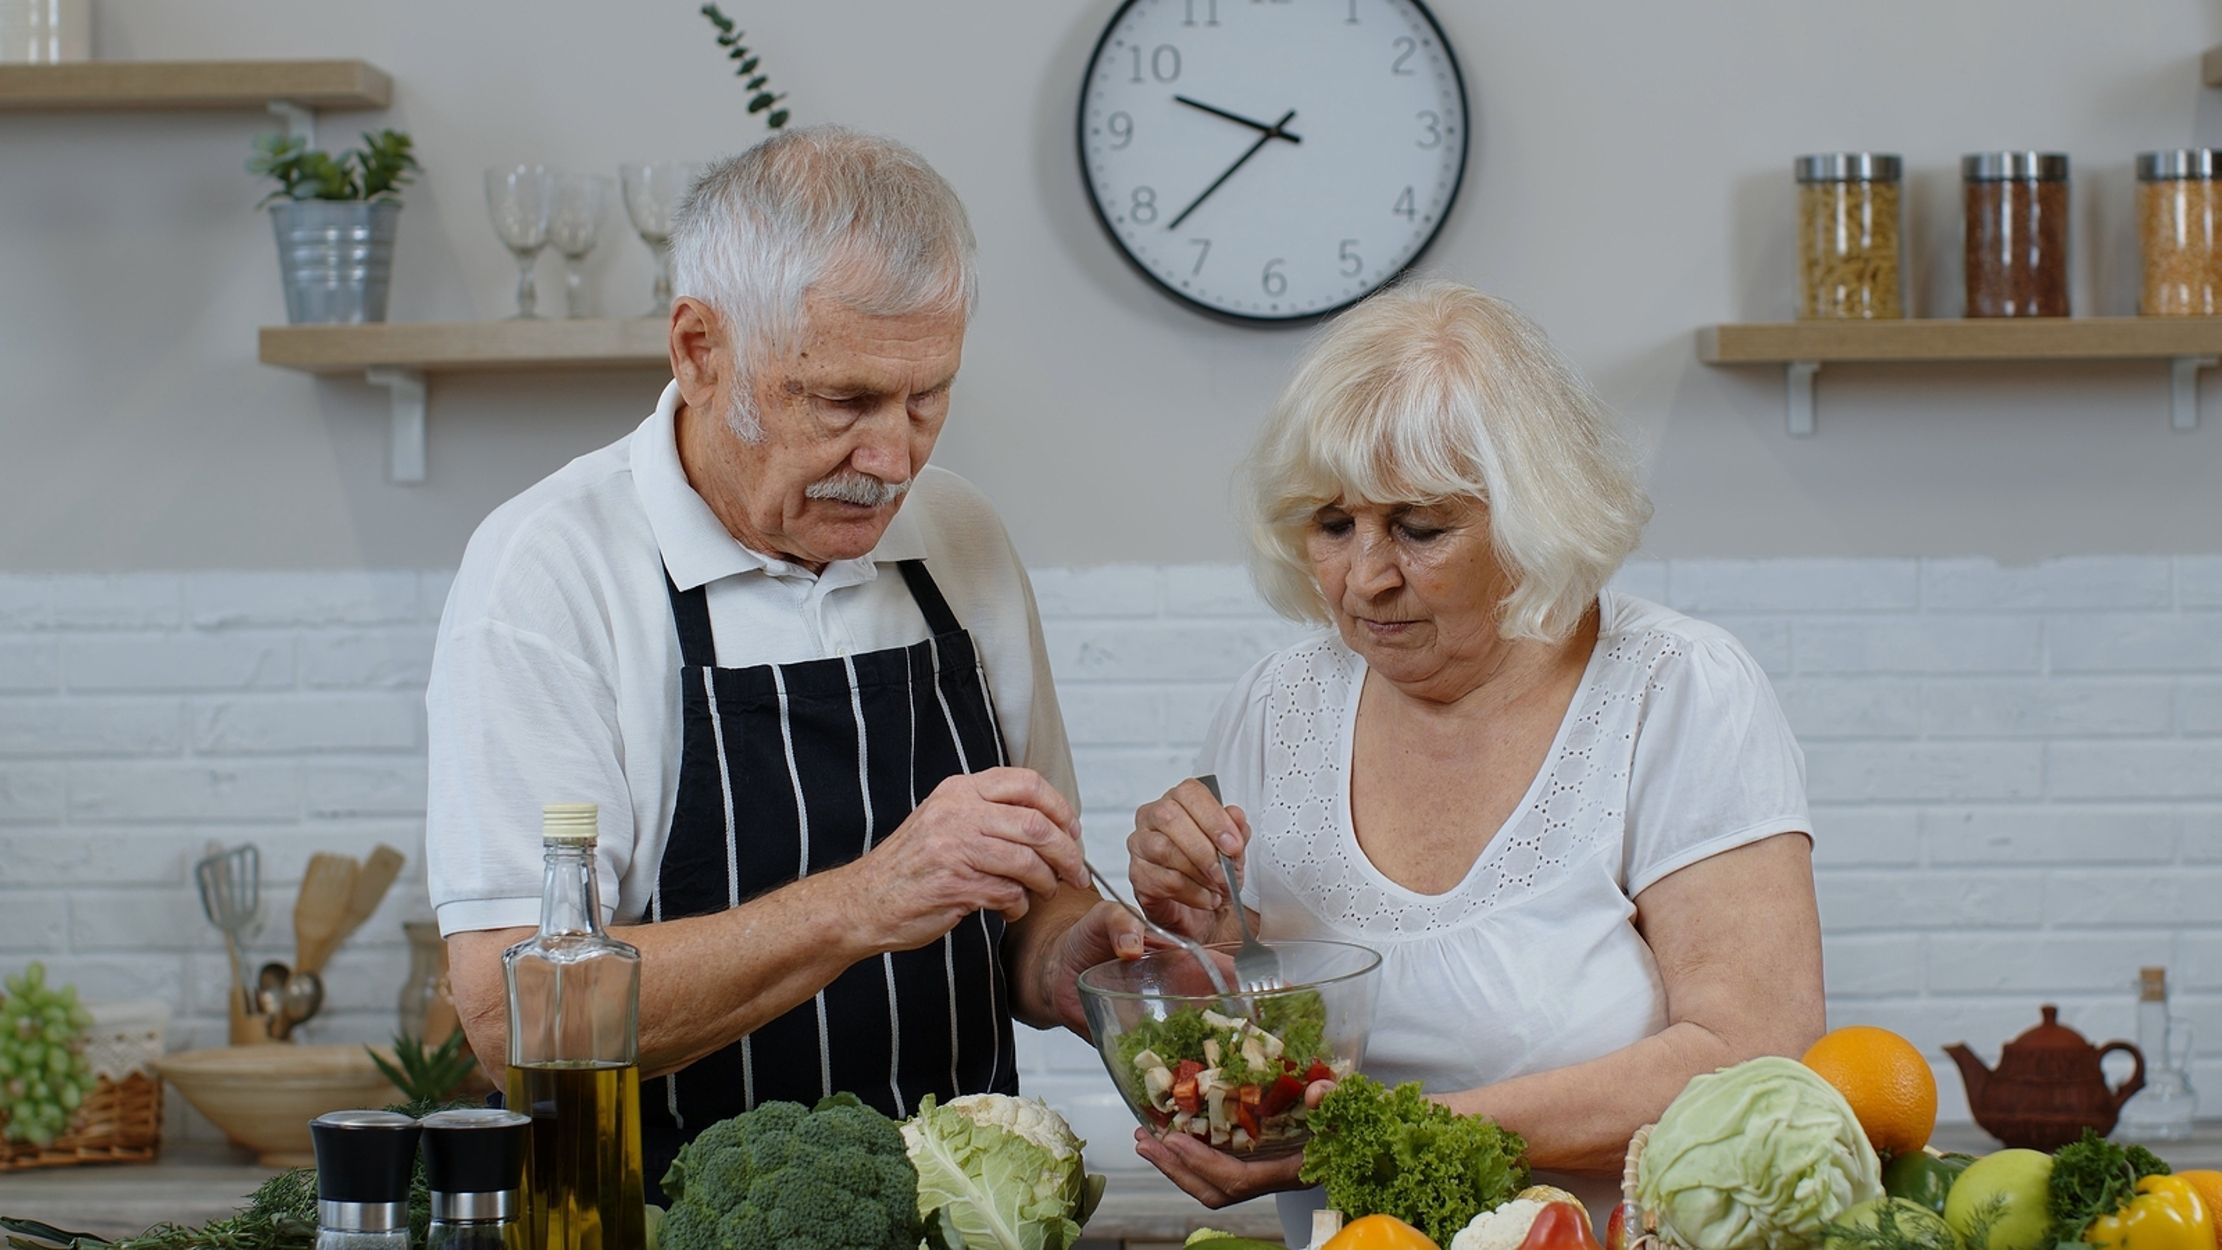 La dieta de la longevidad funciona: reduce la edad biológica y mejora el sistema inmunitario